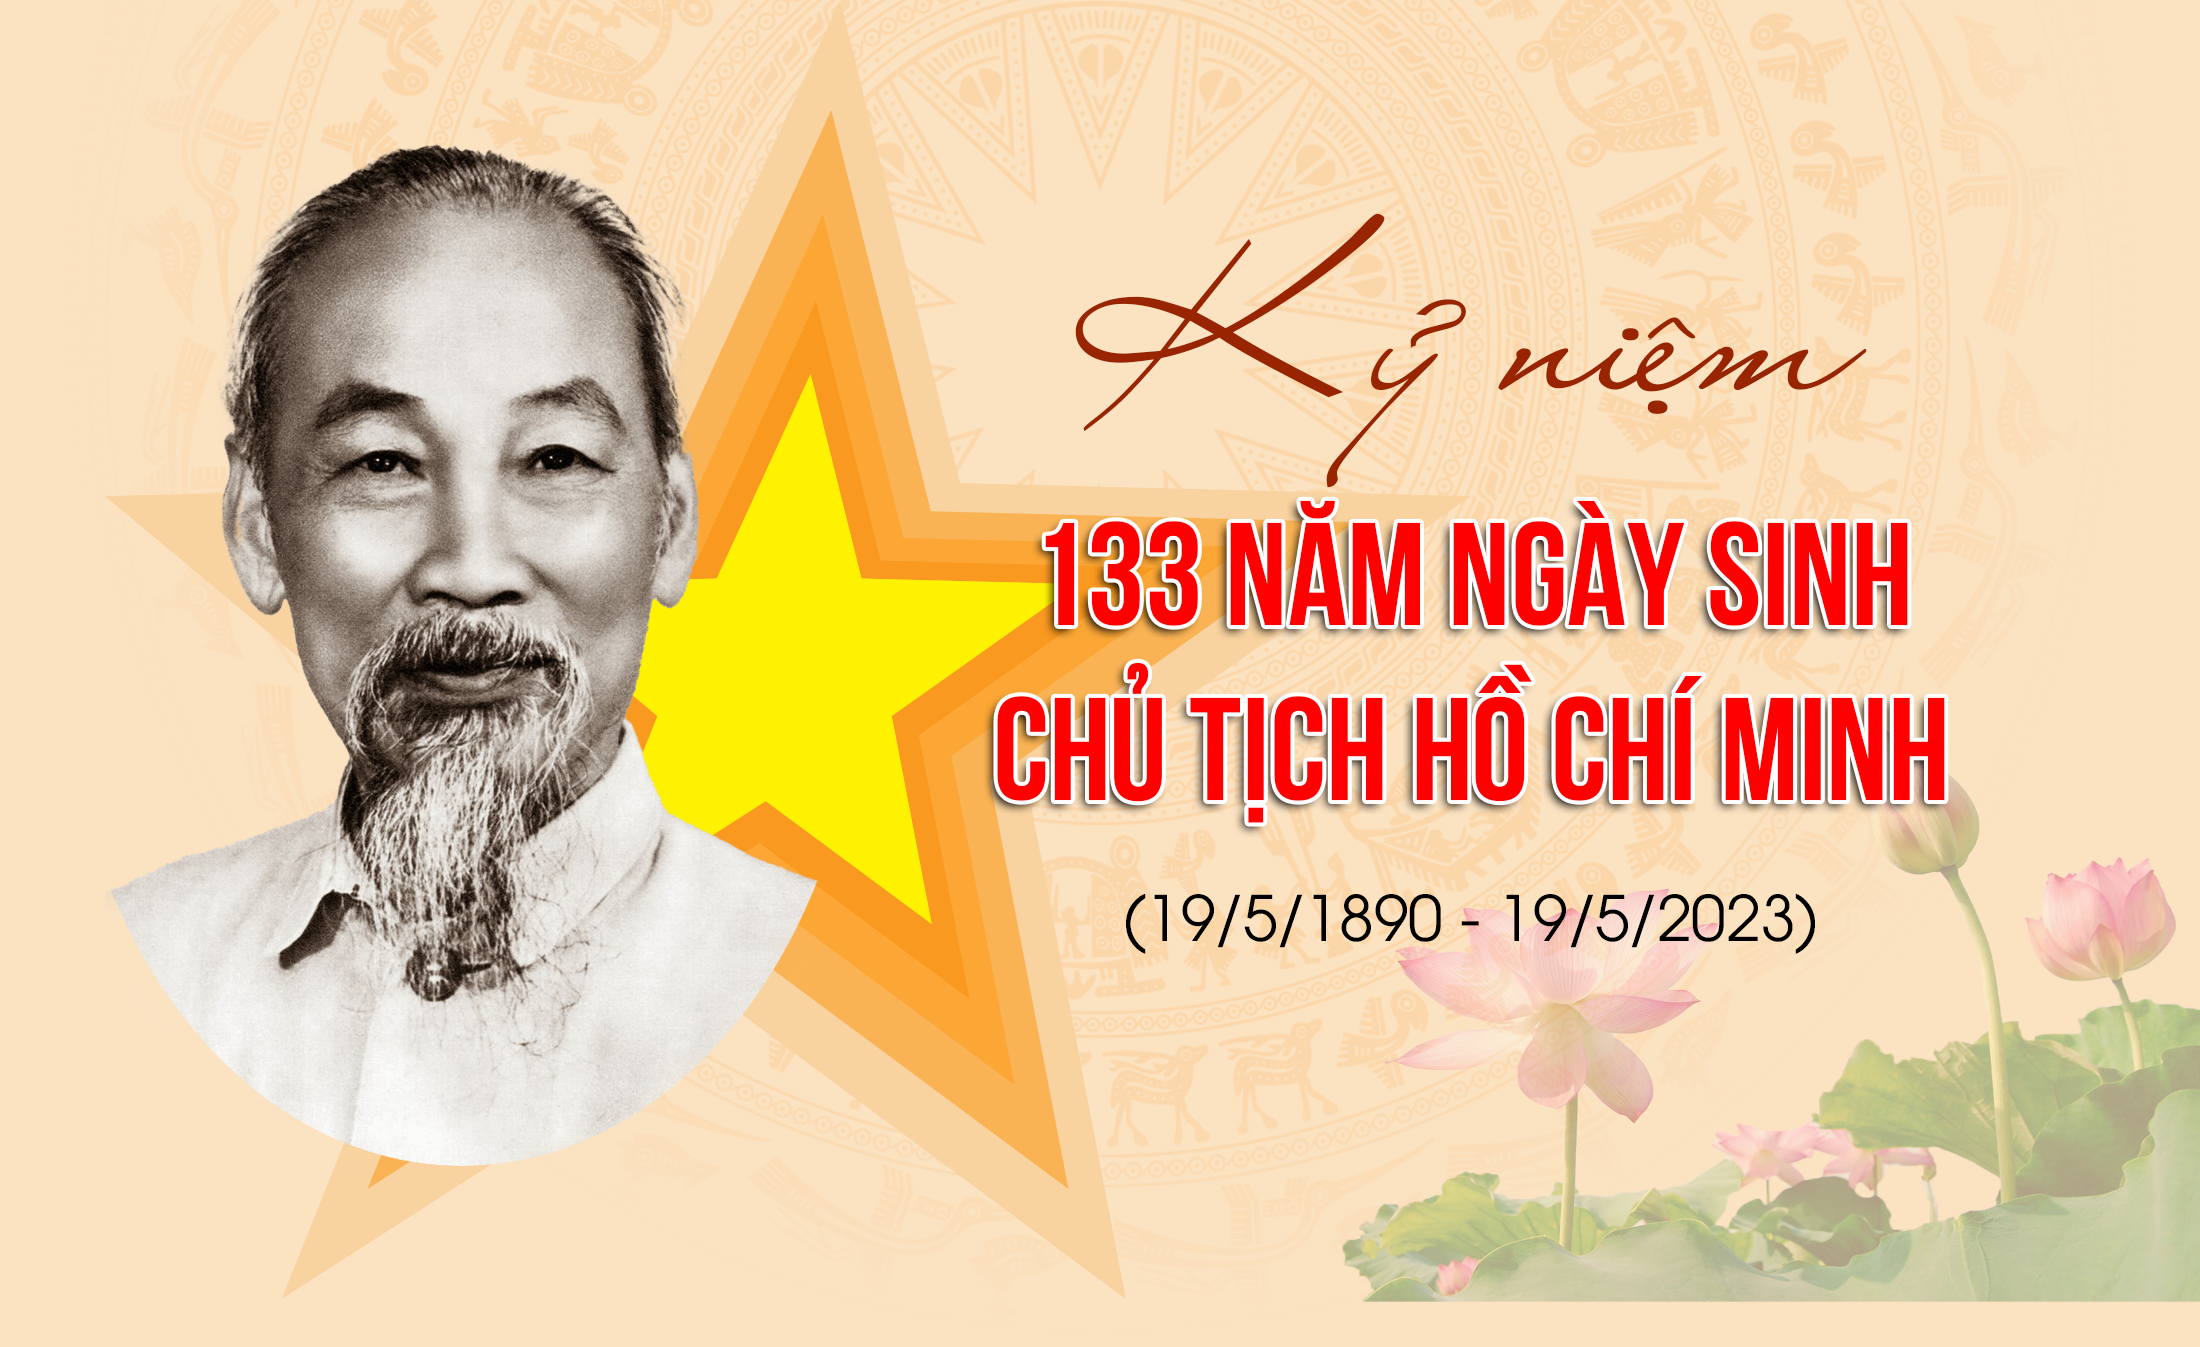 Kỷ niệm 133 năm ngày sinh Chủ tịch Hồ Chí Minh (19/5/1890 - 2023)